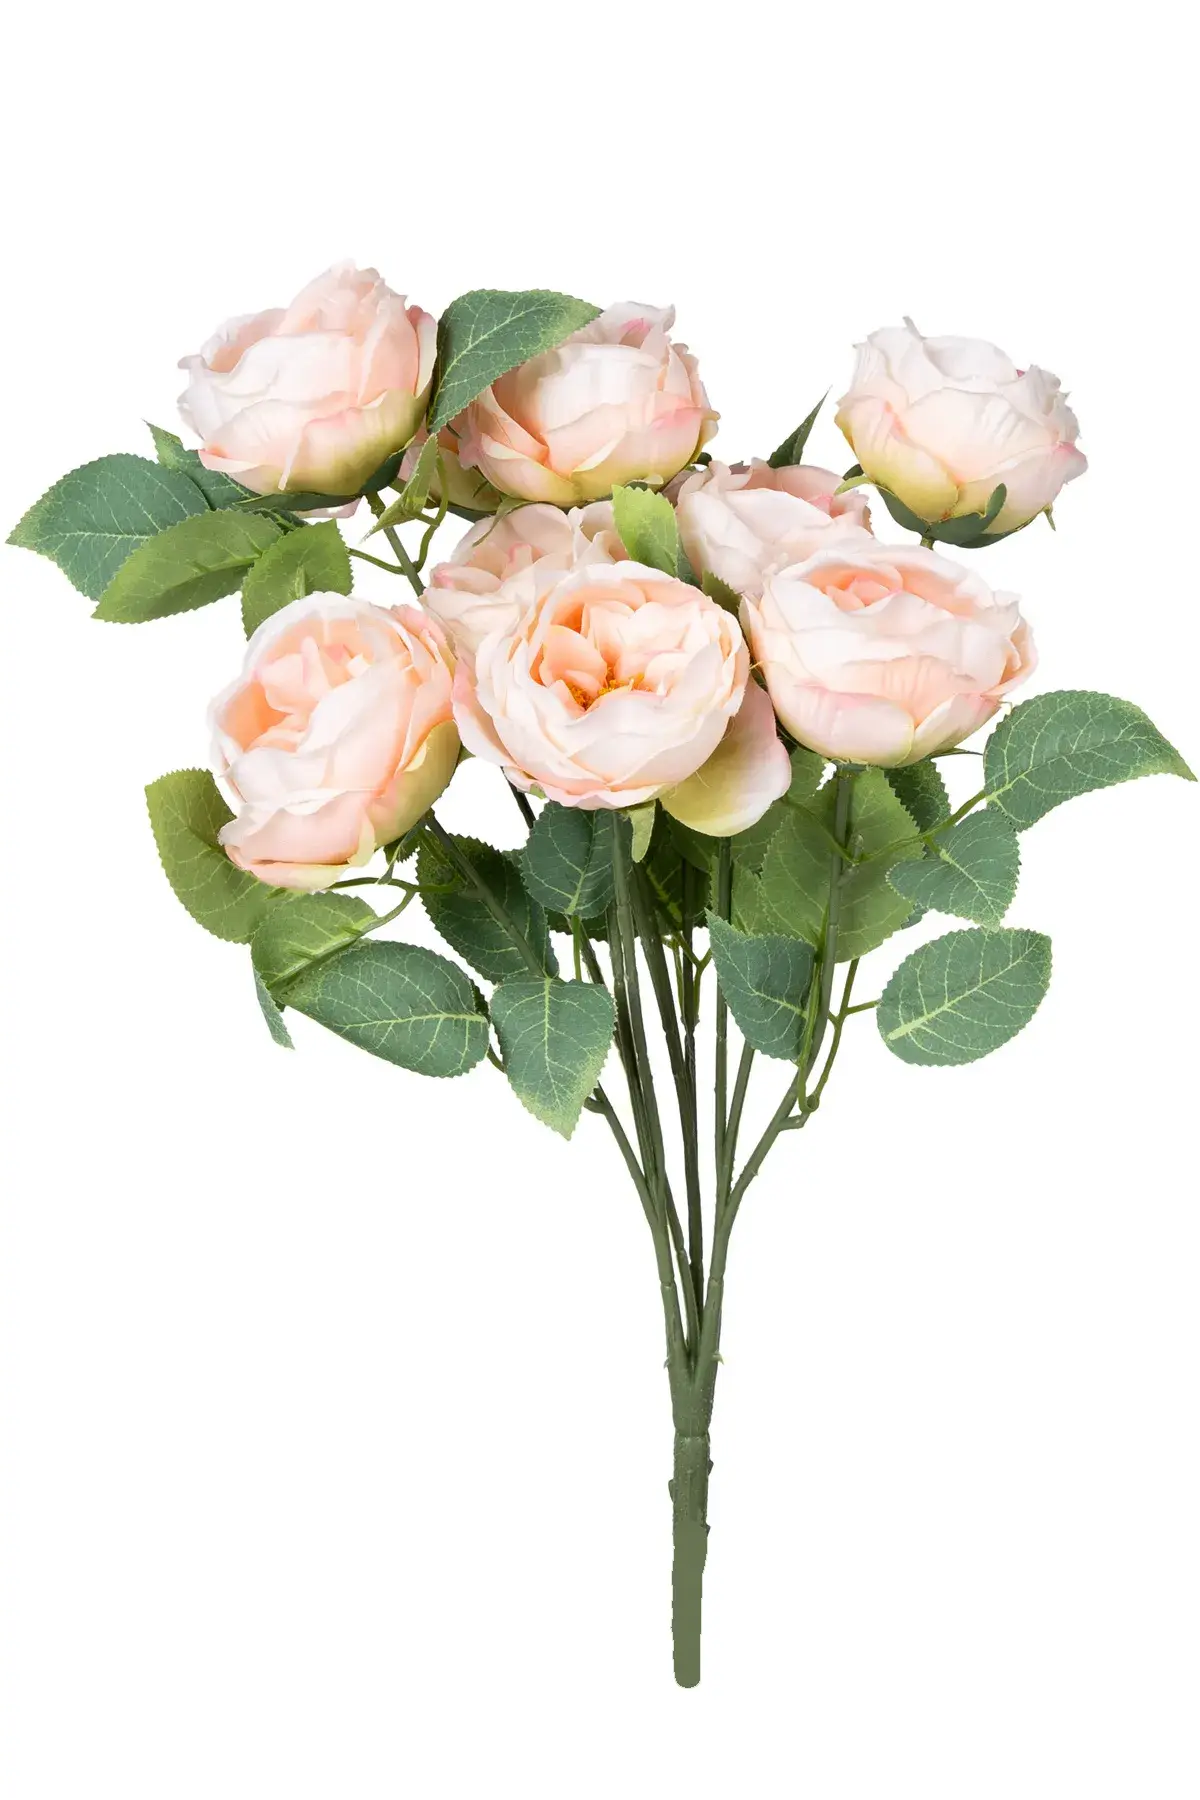 Yapay Çiçek Deposu - Yapay Çiçek 10 Dallı Catalina Rose 45 cm Somon